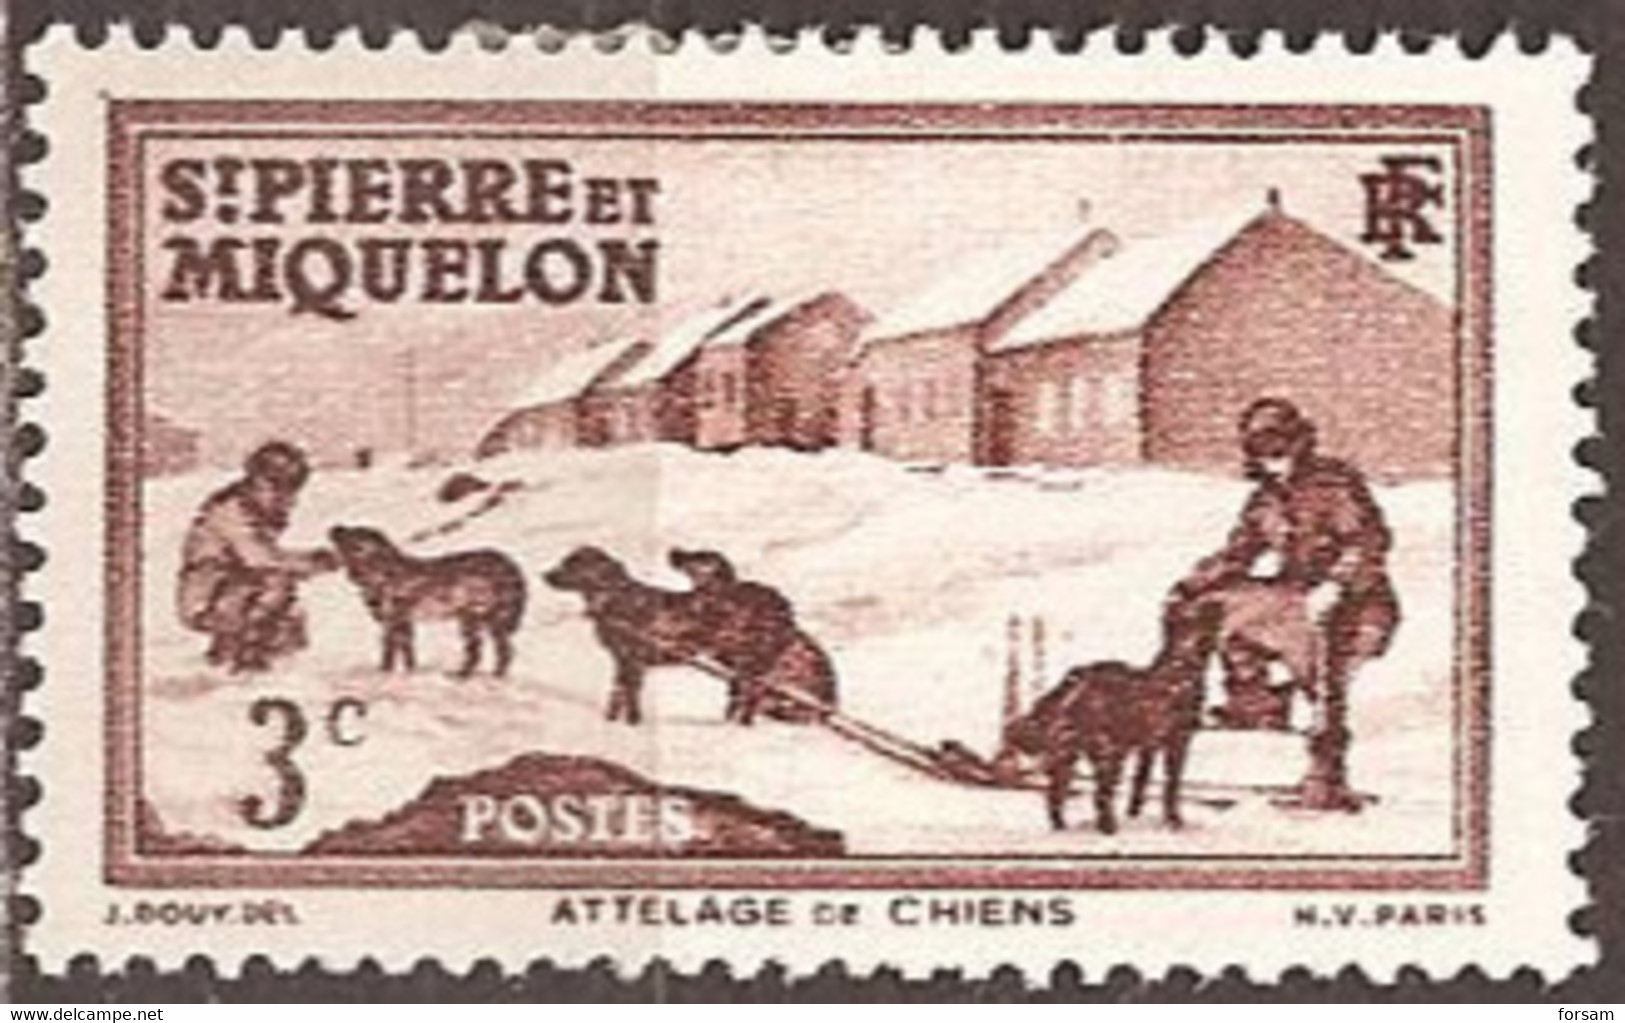 SAINT-PIERRE & MIQUELON..1938..Michel # 171...MH. - Unused Stamps